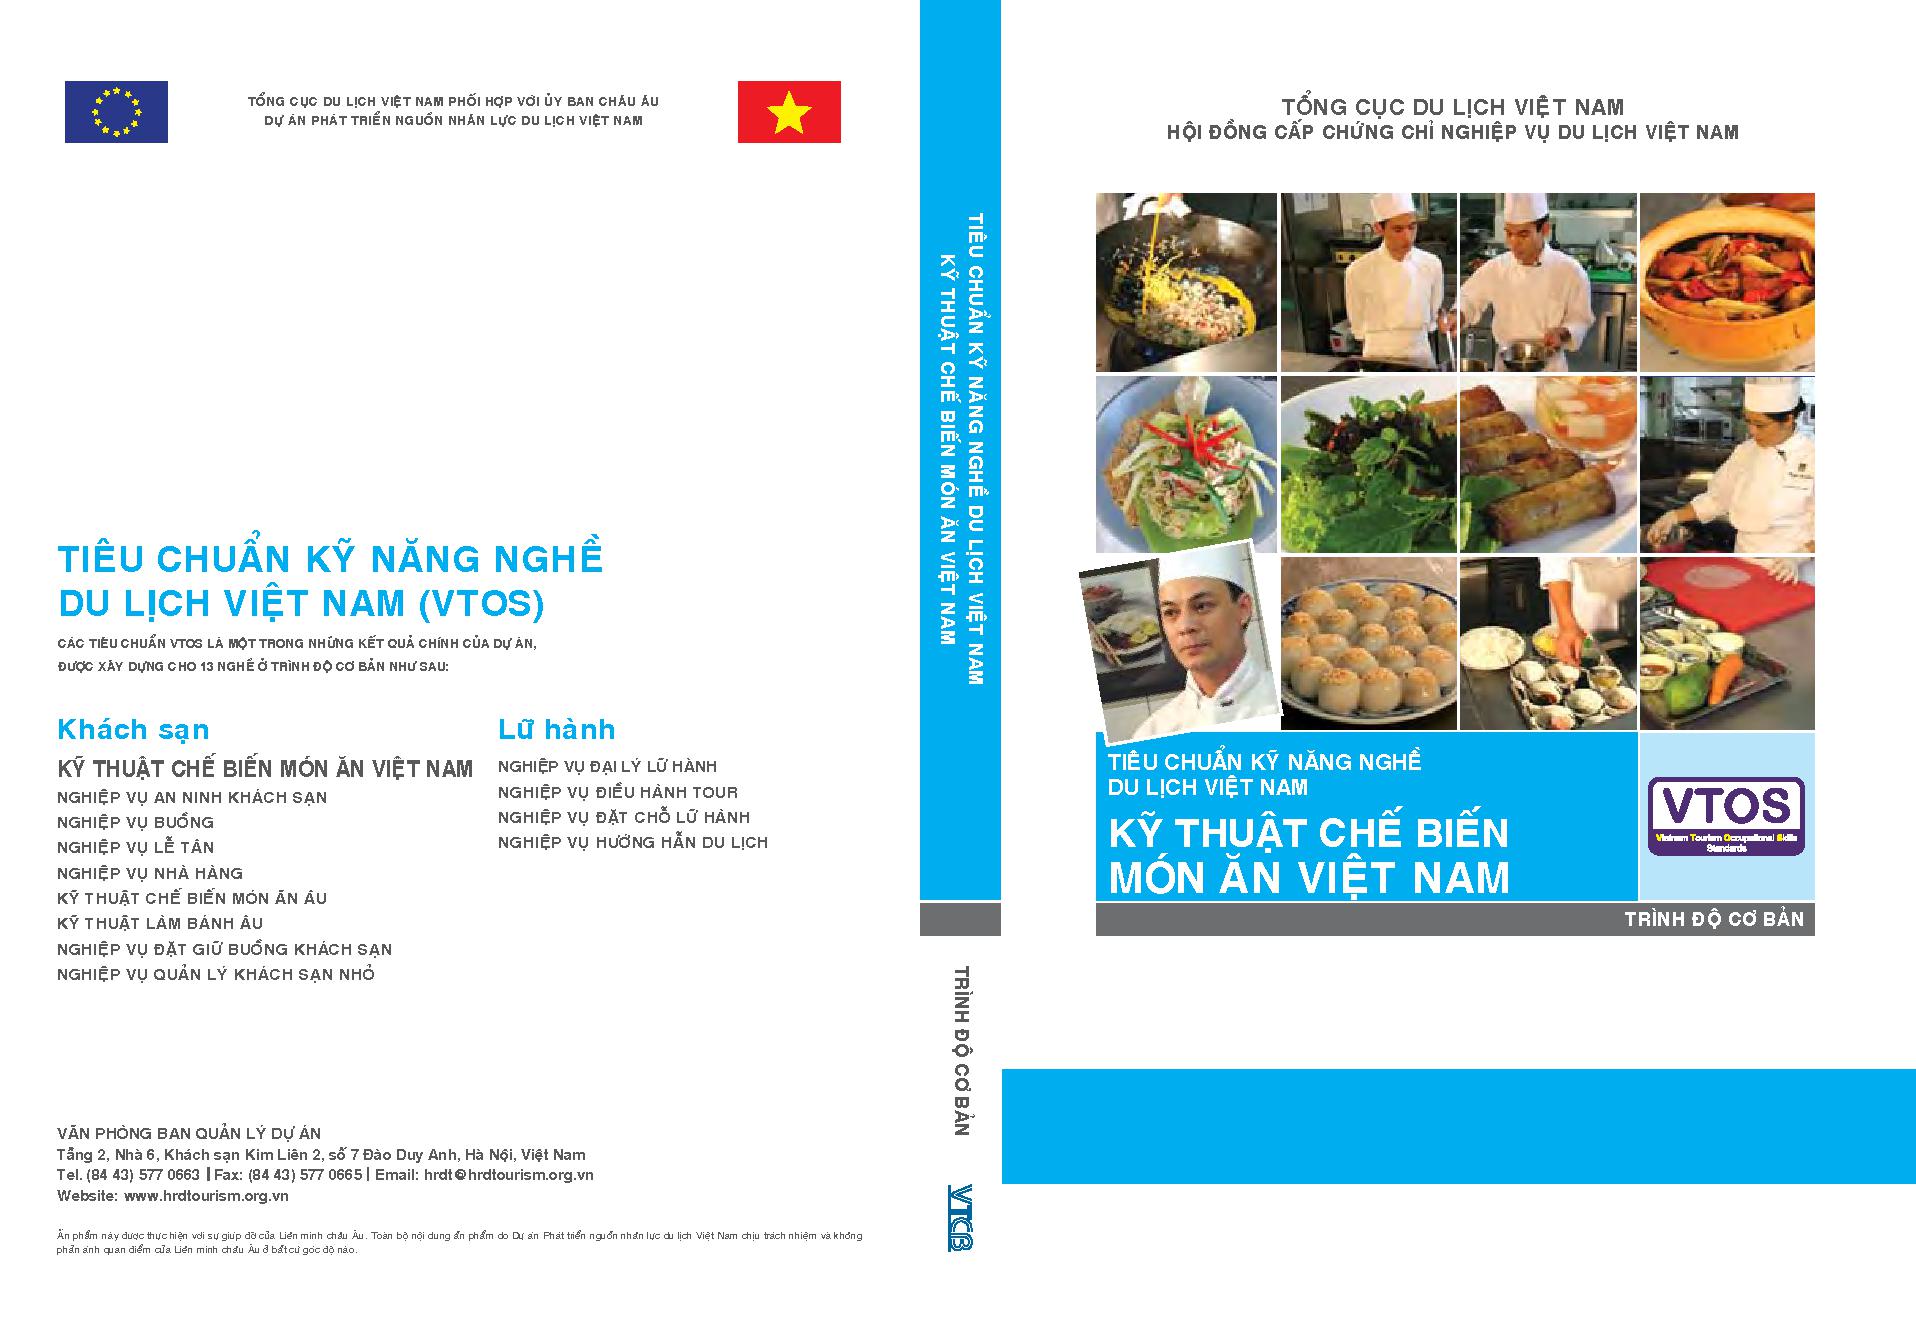 Kỹ thuật chế biến món ăn Việt Nam